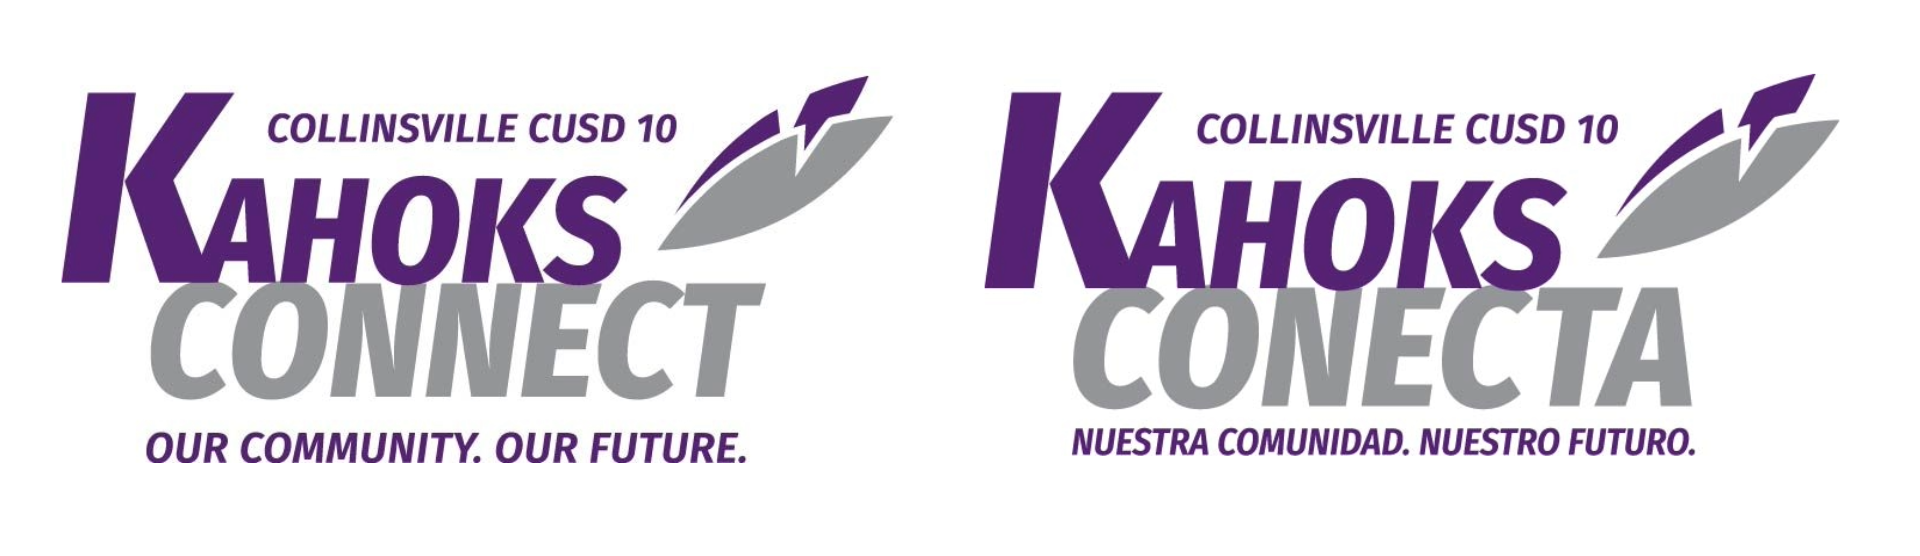 English & Spanish Kahoks Connect Logos